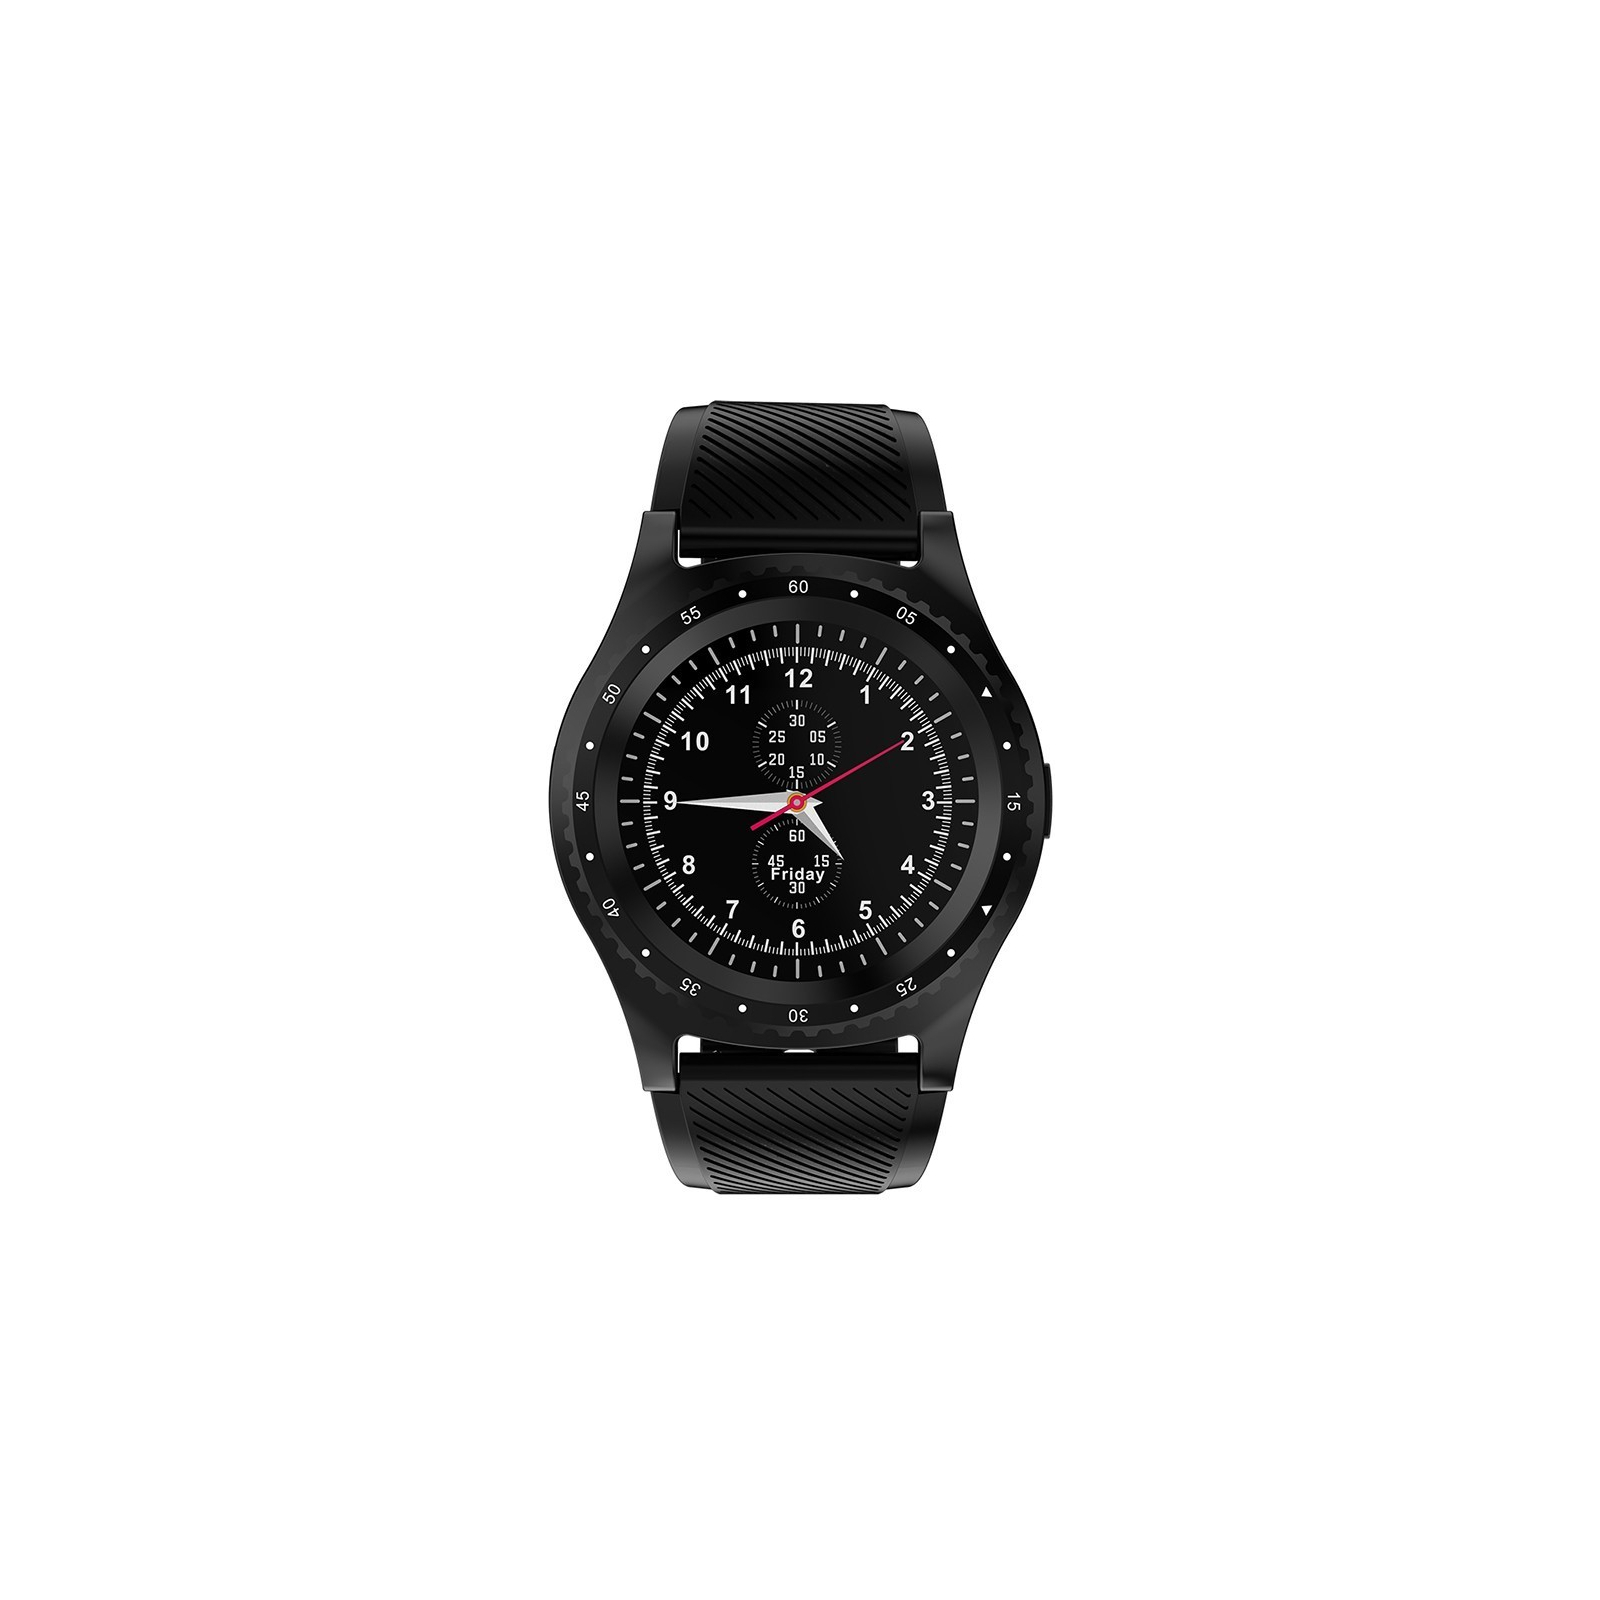 Смарт-часы UWatch L9 Black (F_85714)